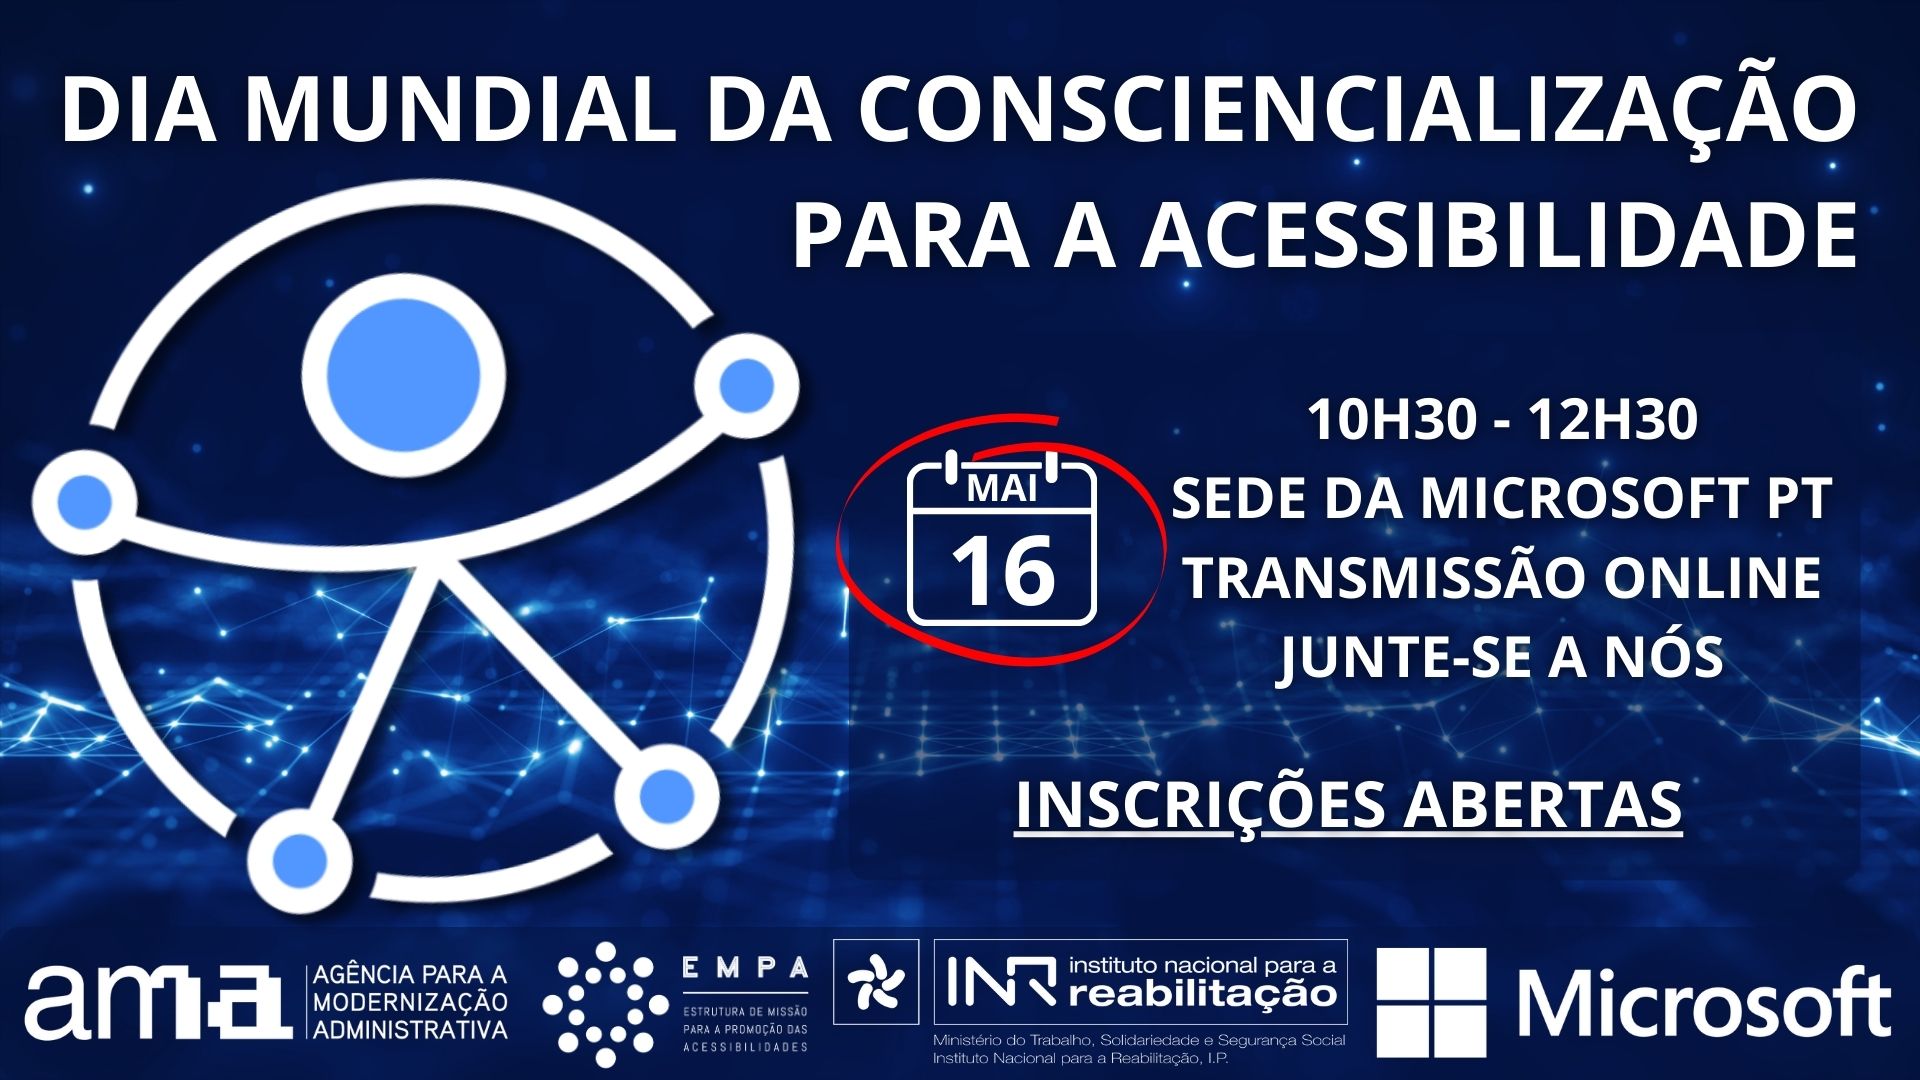 Imagem associada ao evento de celebração do 13.º Dia Mundial da Consciencialização para a Acessibilidade (Global Accessibility Awareness Day - GAAD),